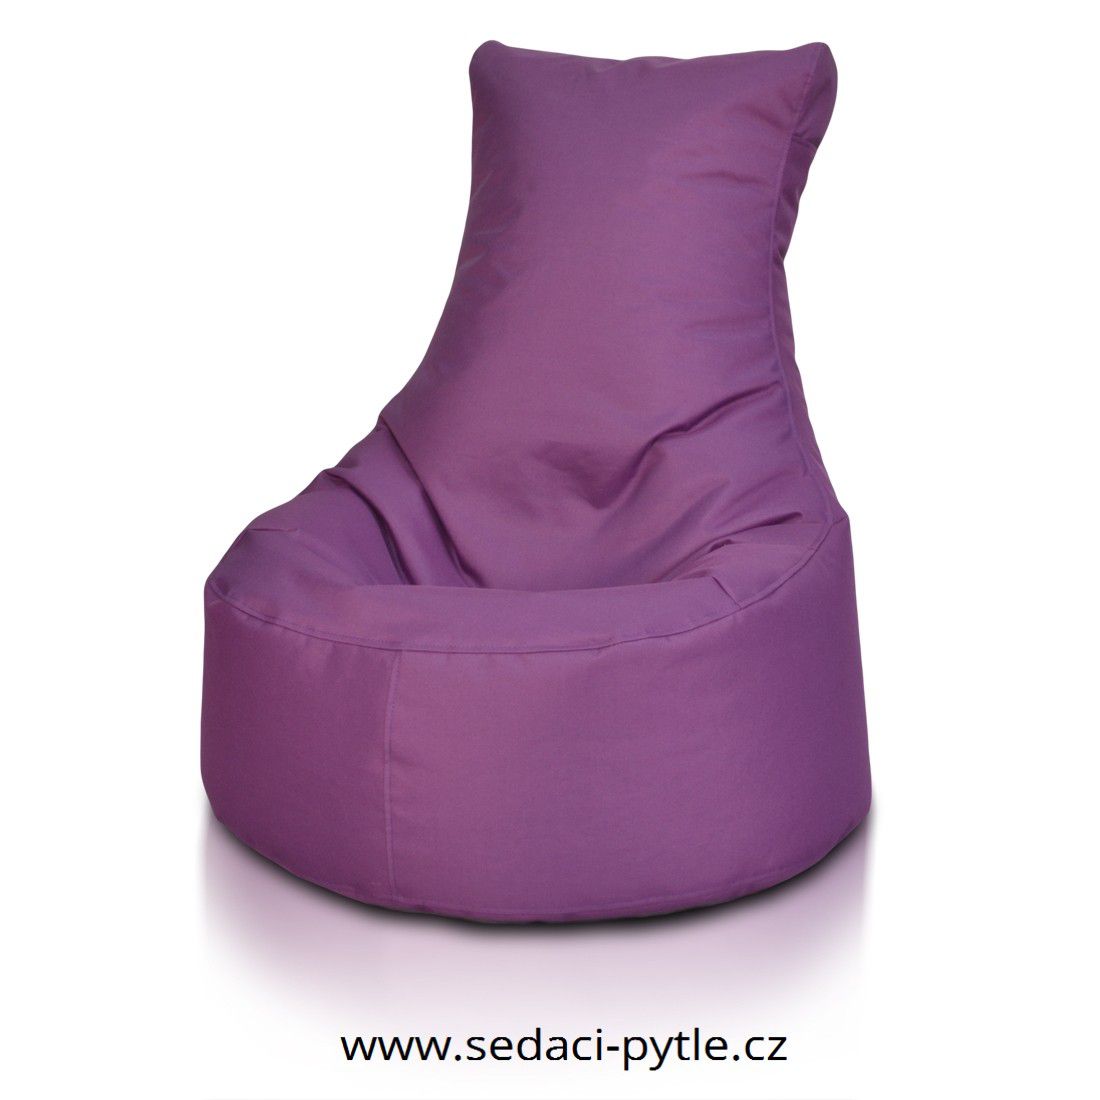 Primabag Seat polyester NC fialová - Sedaci-Pytle.cz